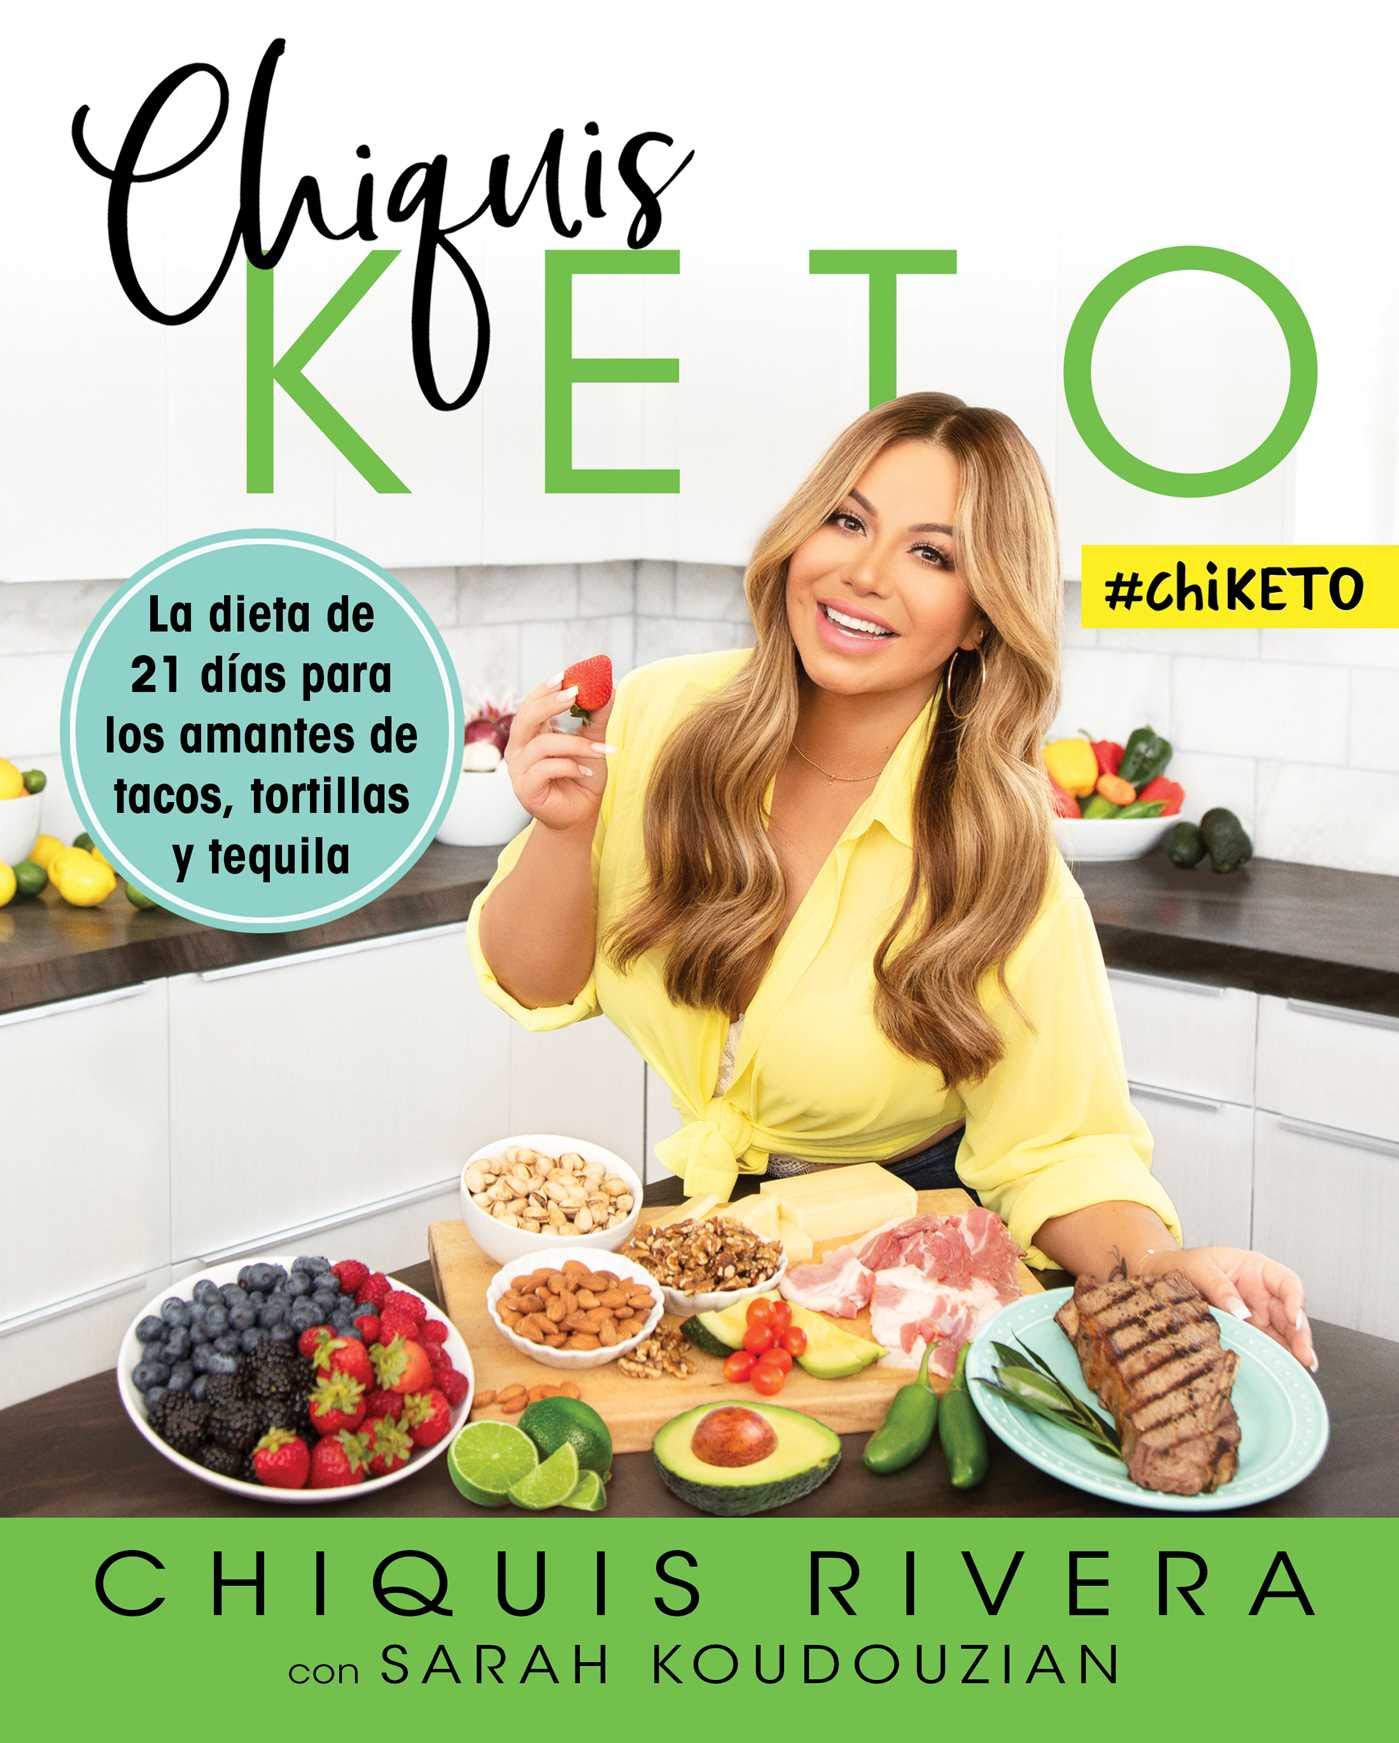 Chiquis Keto (Spanish edition): La dieta de 21 días para los amantes de tacos, tortillas y tequila (Atria Espanol)